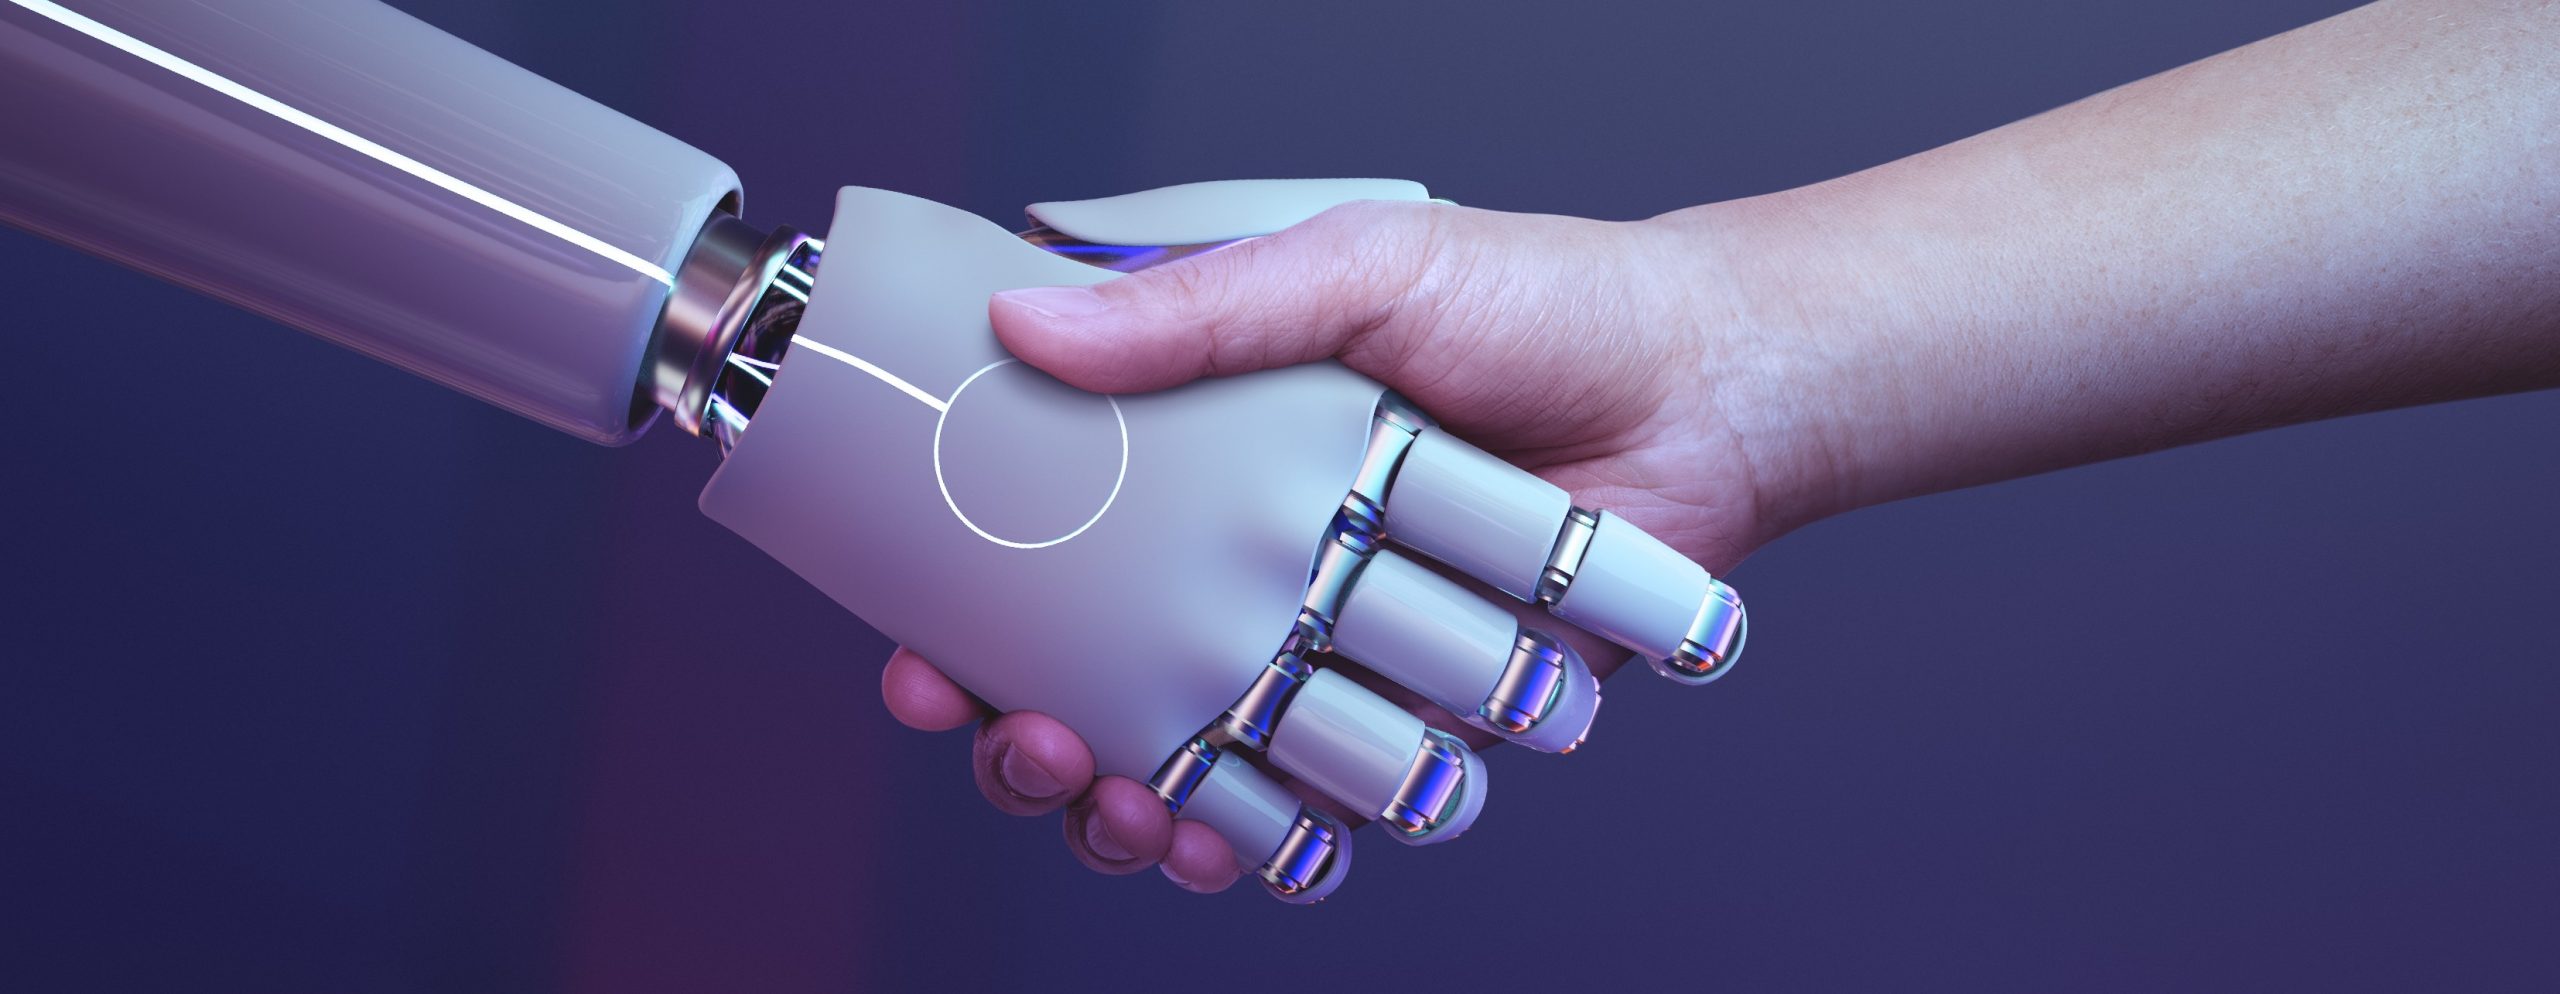 Eine Robotorhand und eine Menschenhand geben sich die Hand